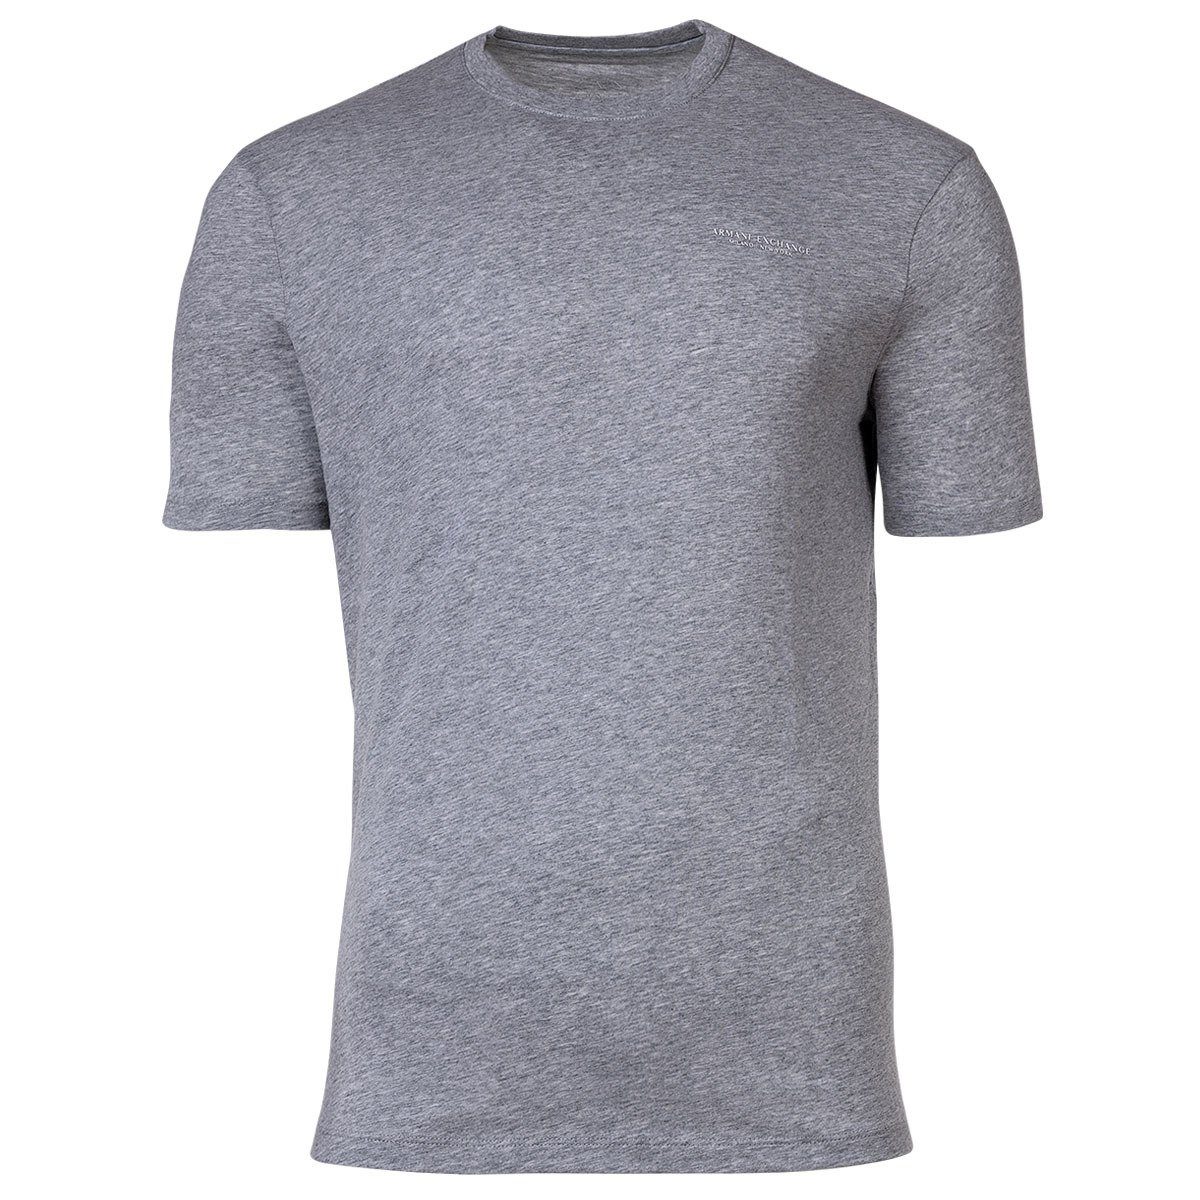 ARMANI EXCHANGE T-Shirt Herren T-Shirt - Logoschriftzug, Rundhals, Cotton Grau